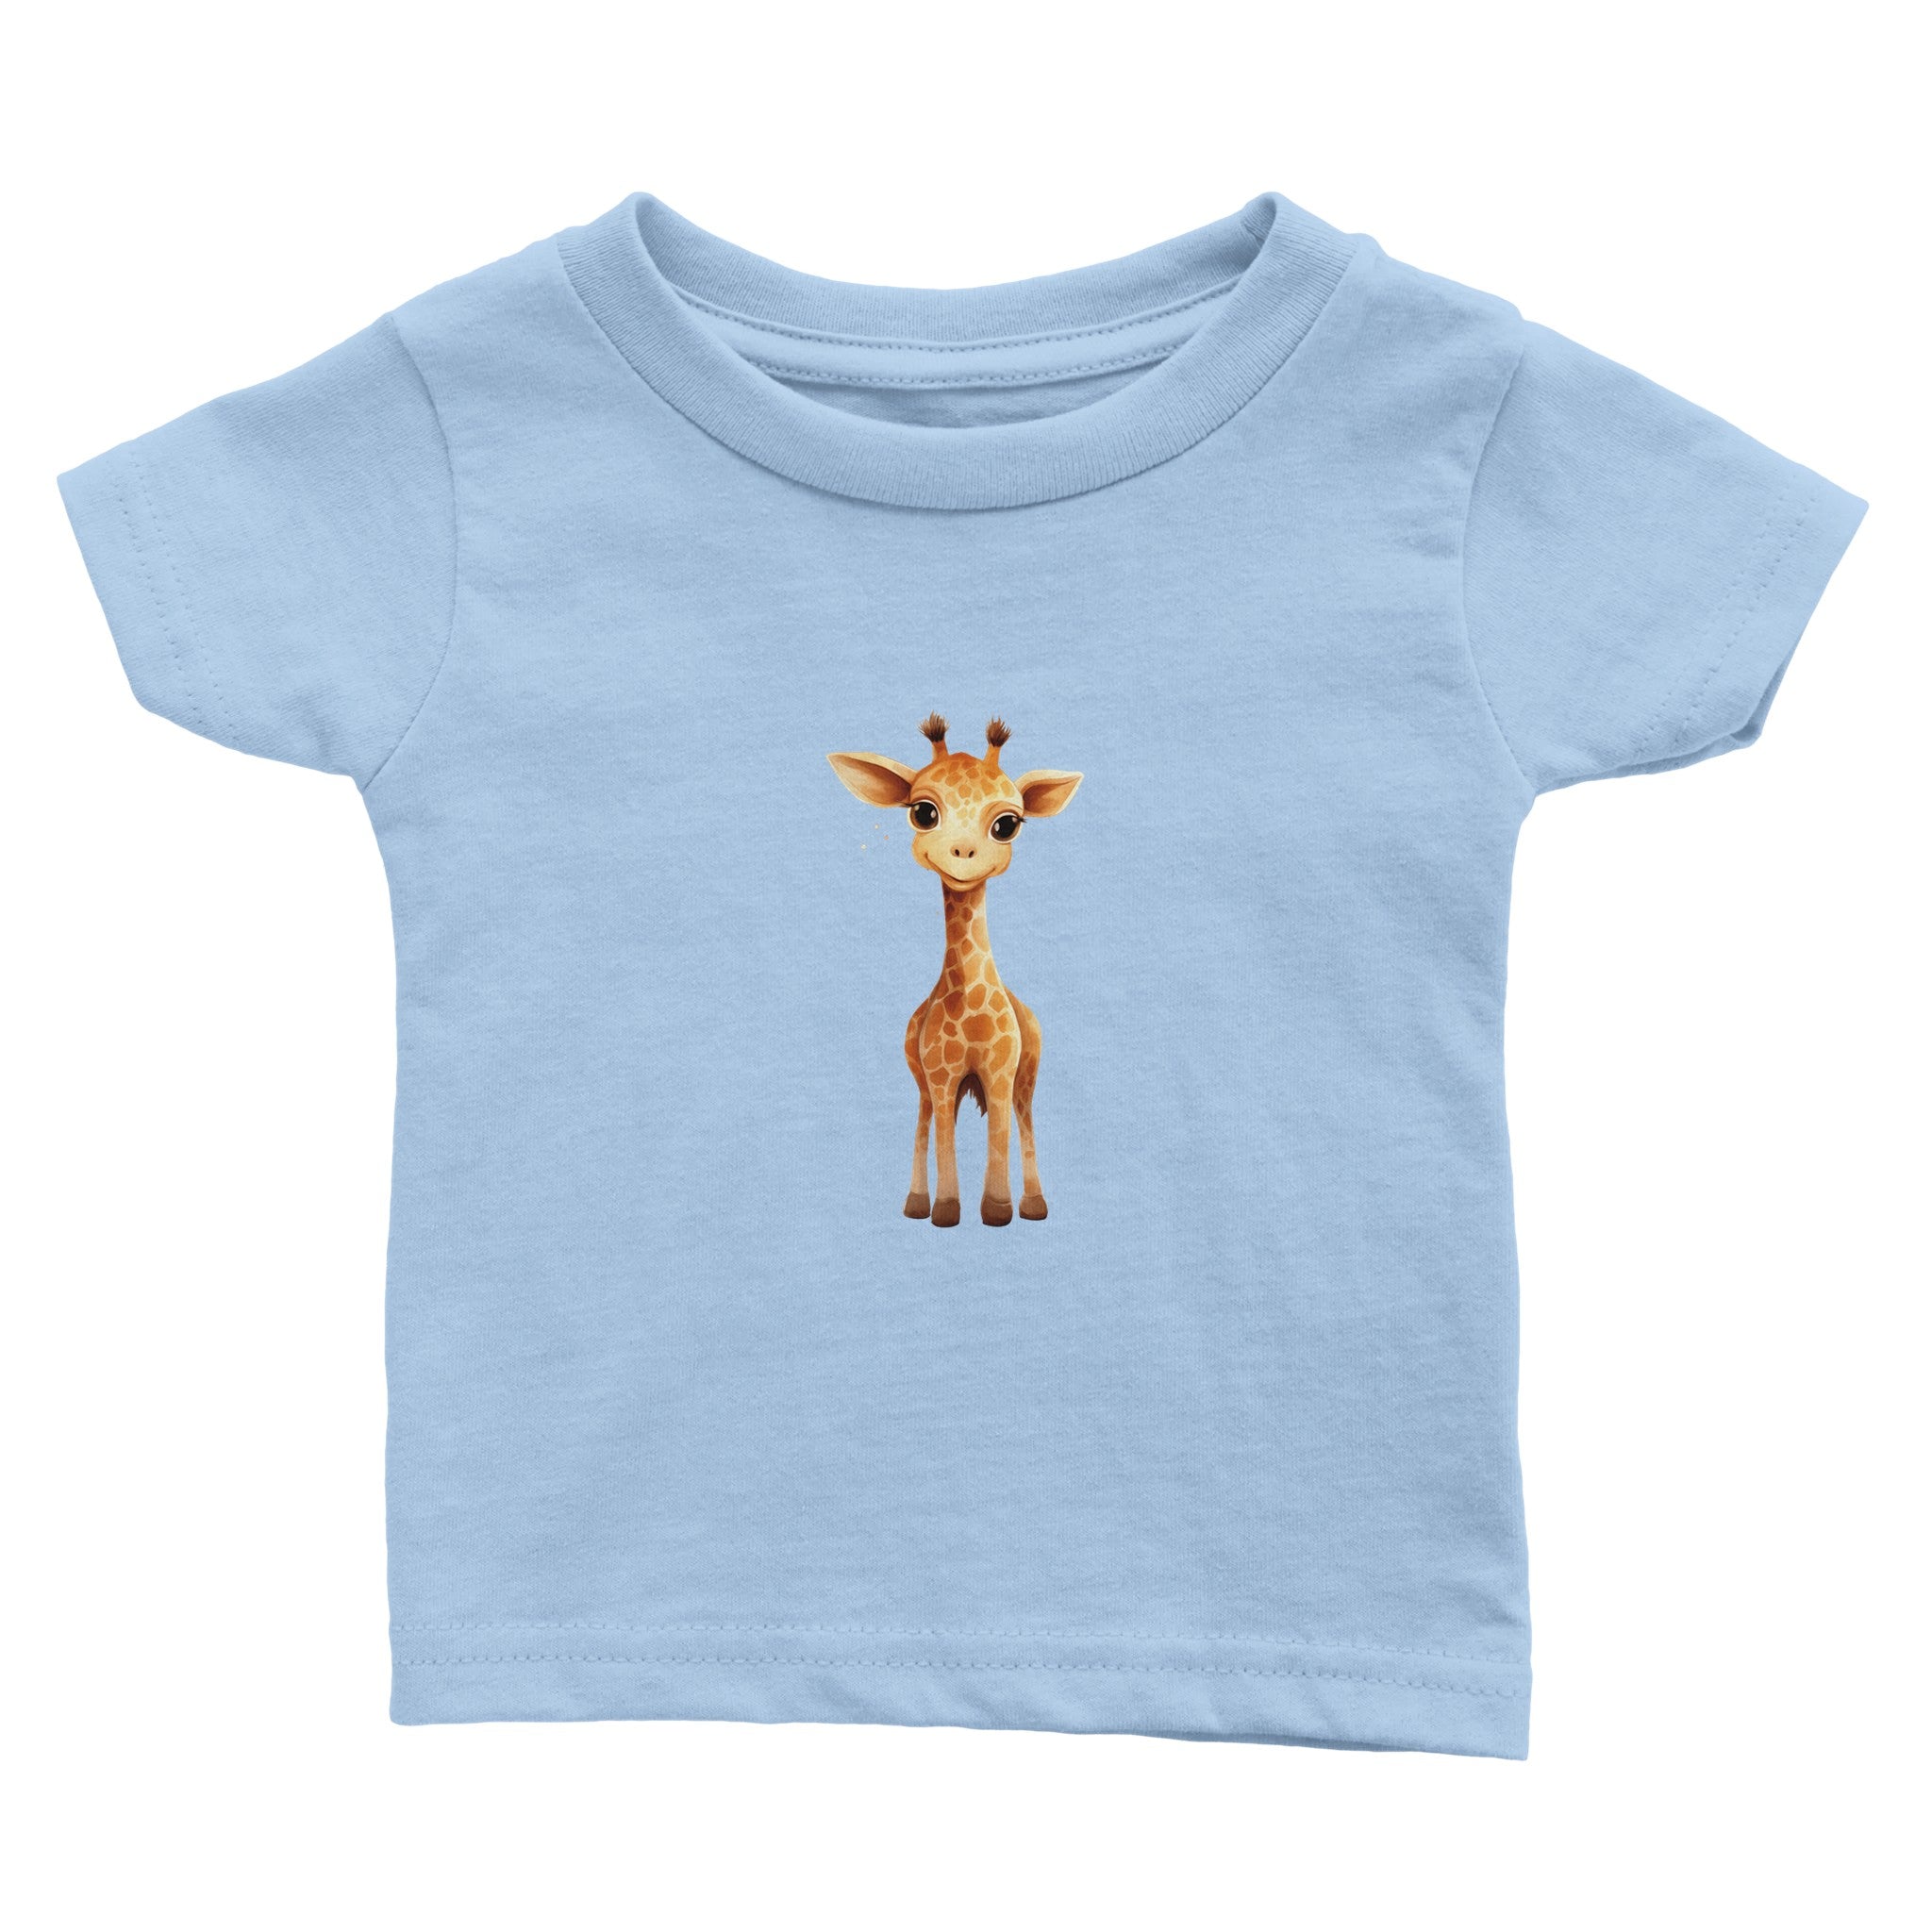 Gentle Eyed Giraffelet Baby Crewneck T-shirt - Optimalprint